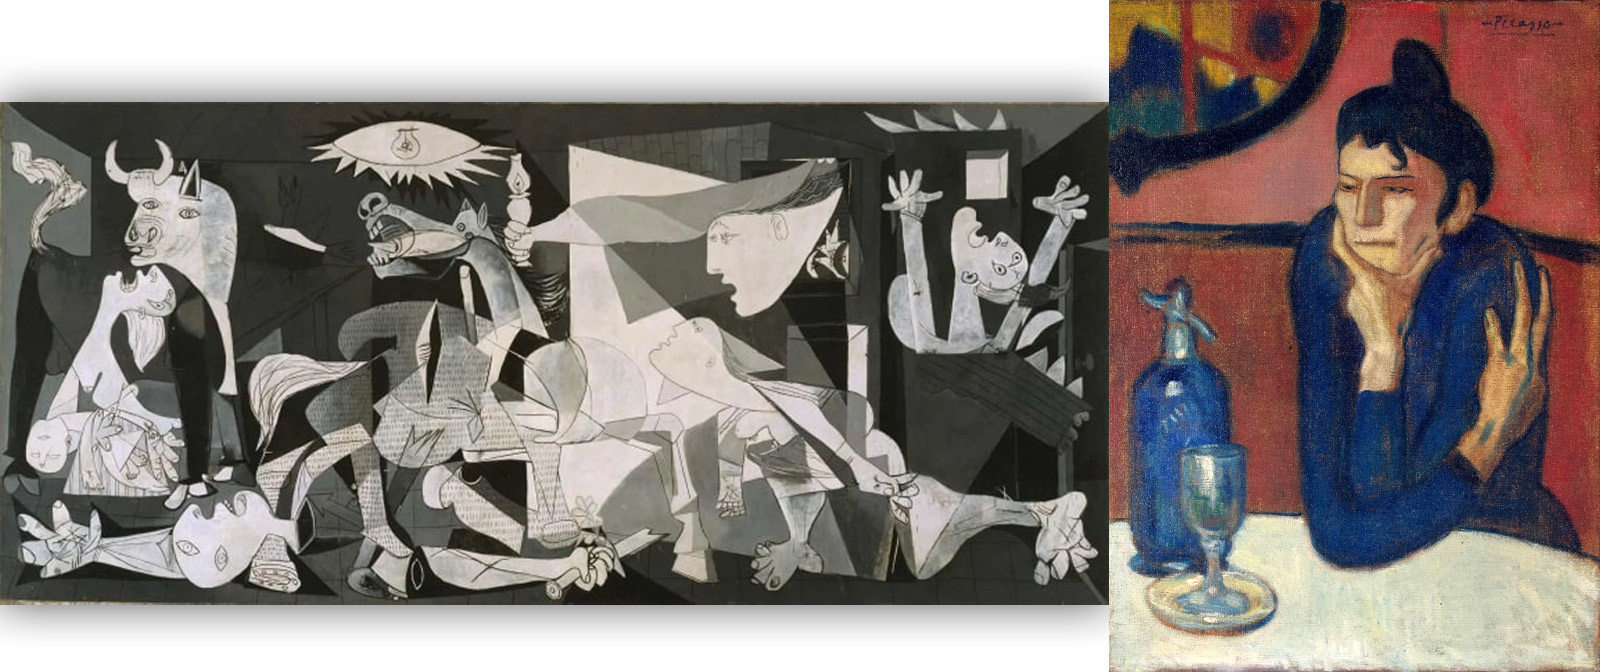 Знаменитые картины Пикассо, которые следует знать всем культурным людям.